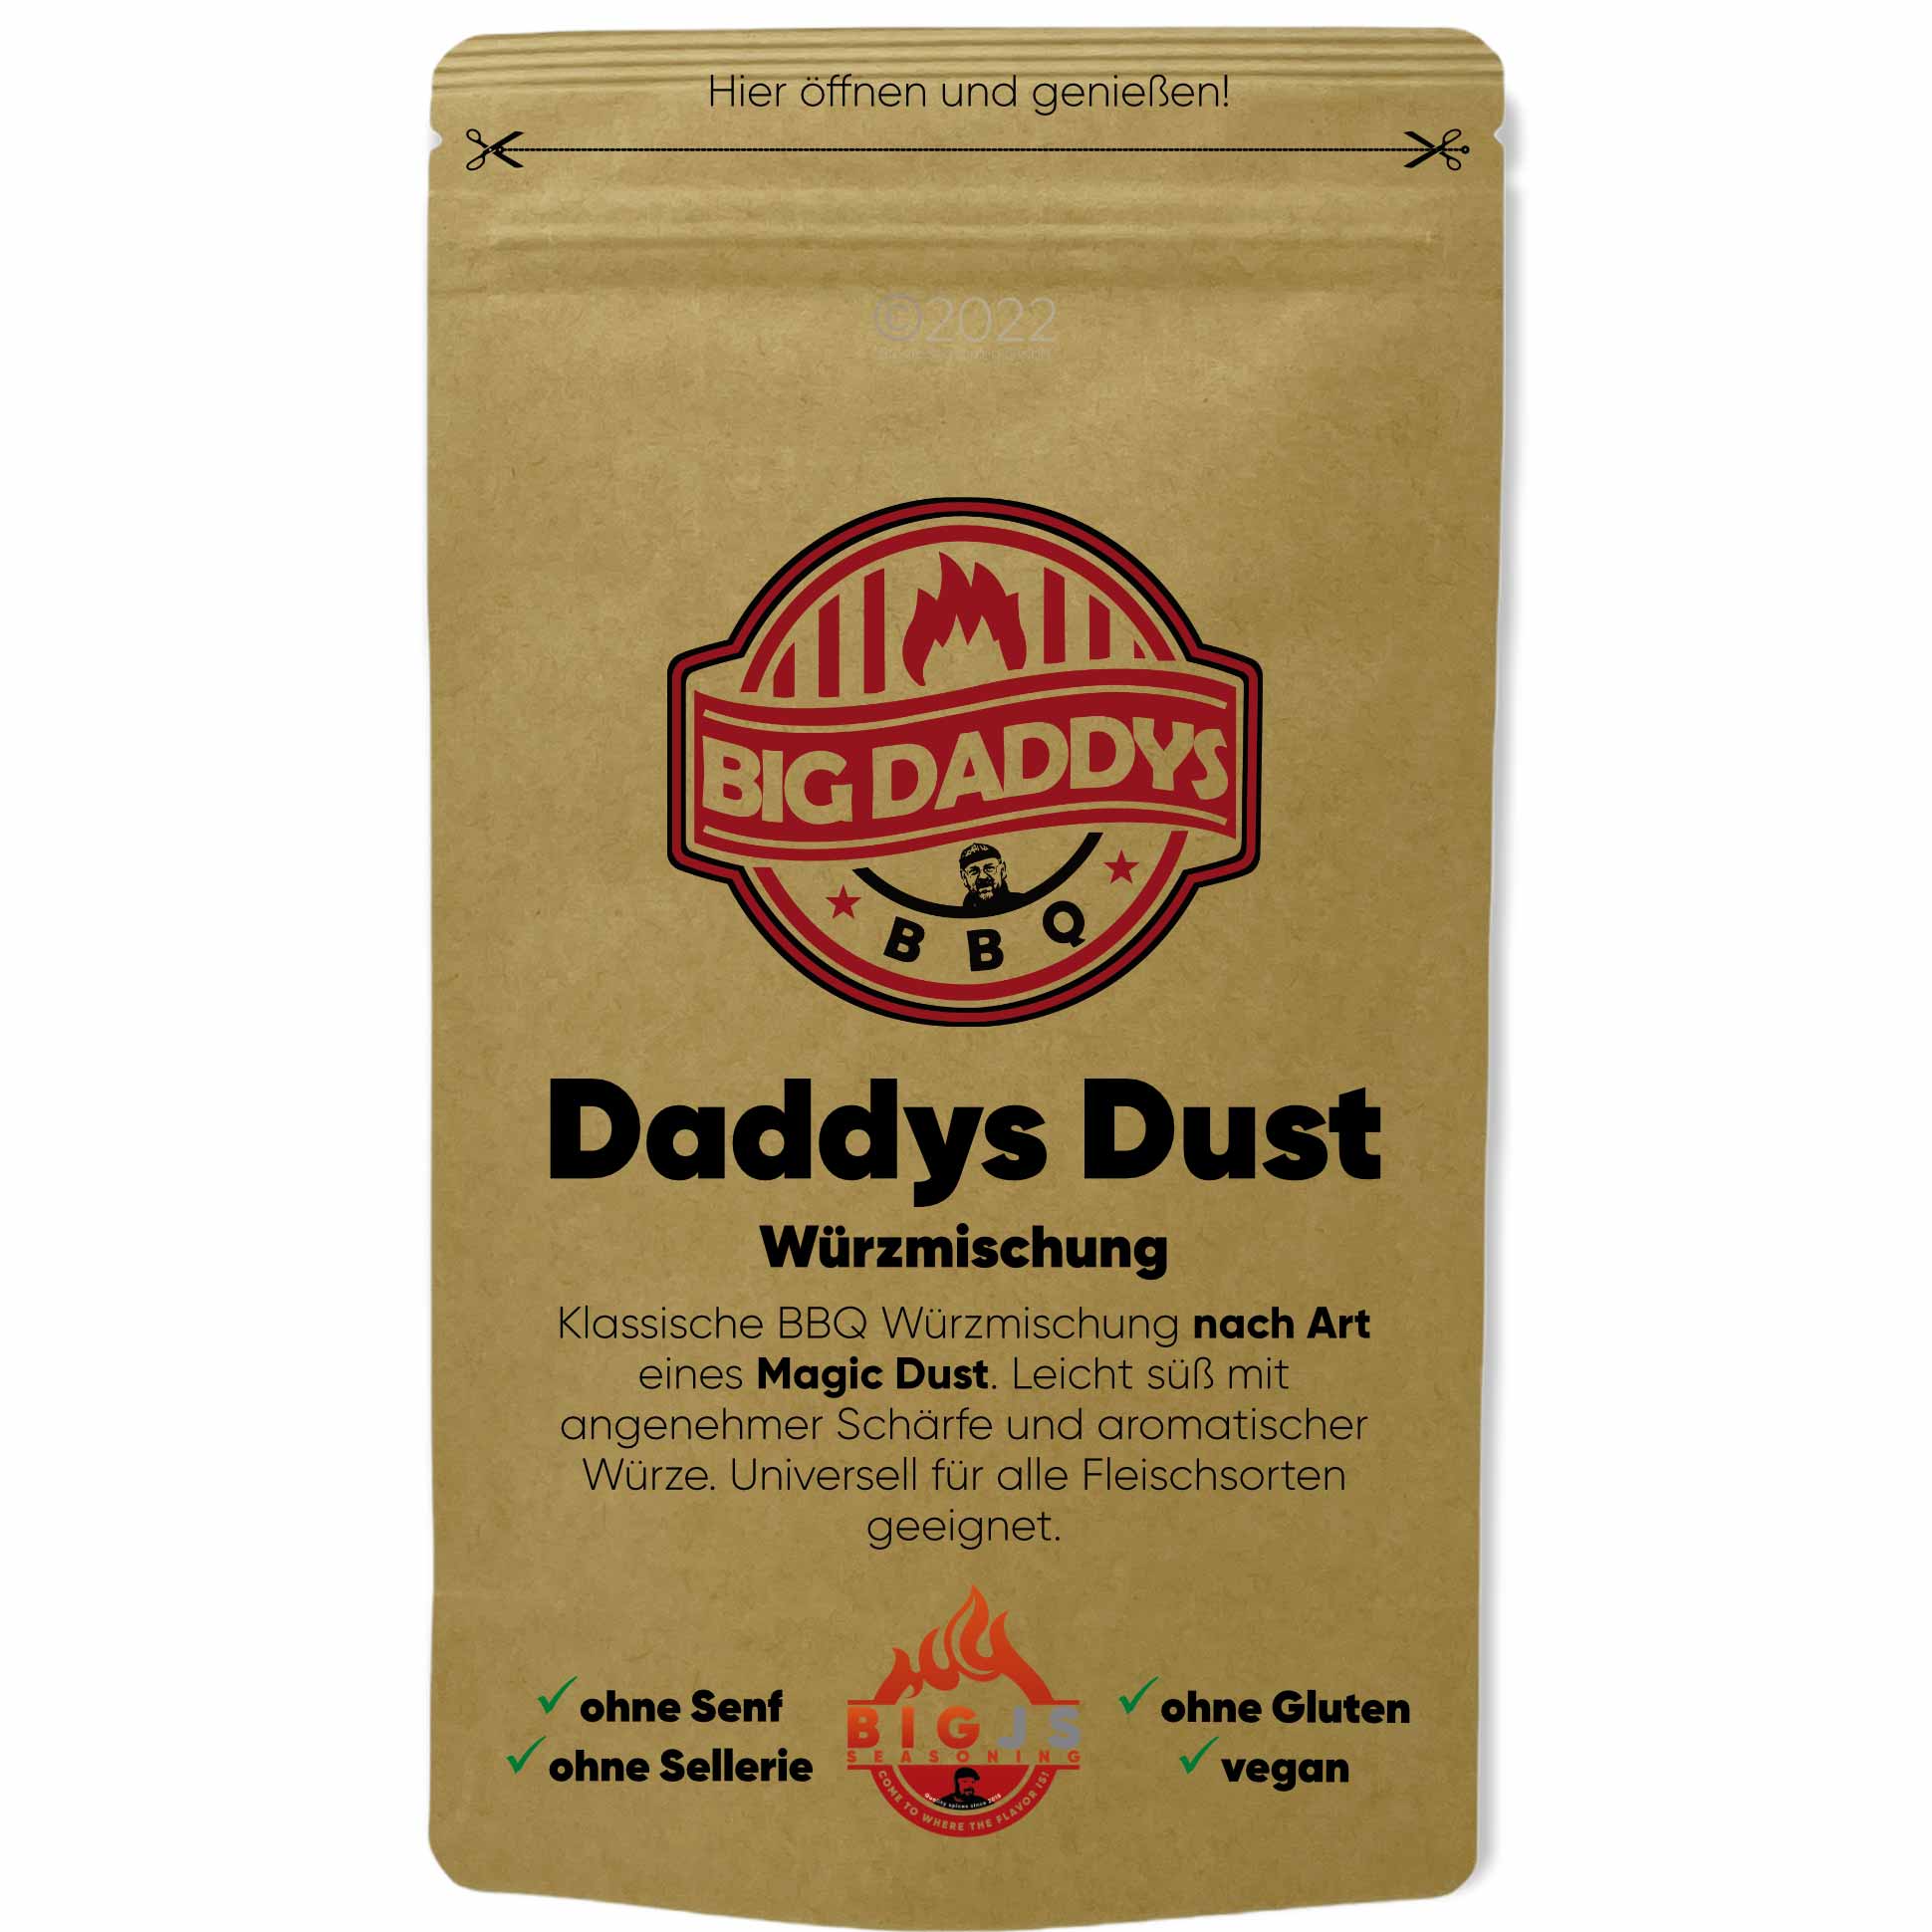 Big Daddys Dust